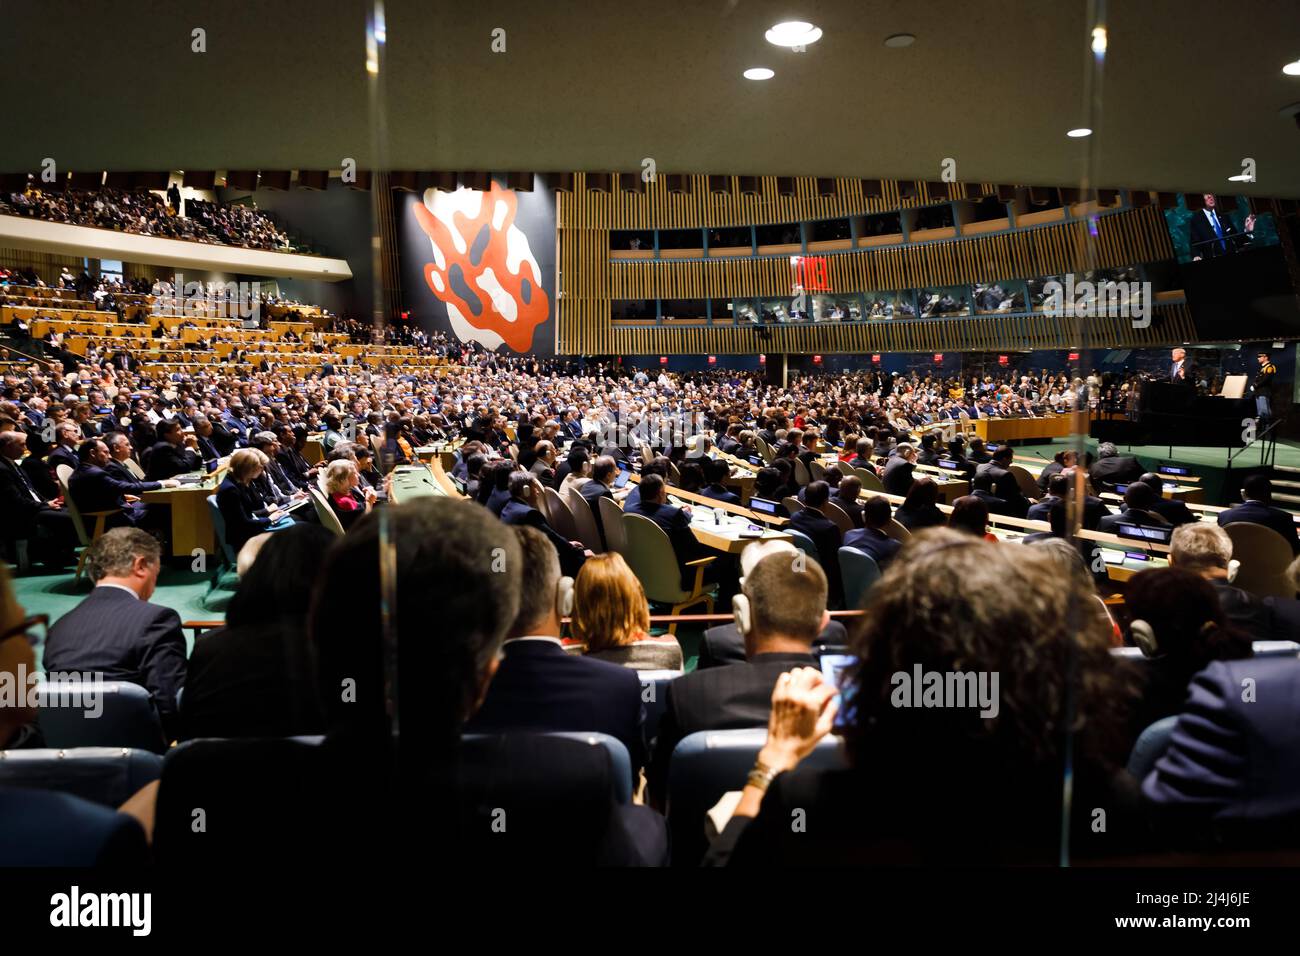 Varias personas vieron el discurso del Presidente de los Estados Unidos de América, Donald Trump, en la Sala de Conferencias de la Organización de las Naciones Unidas en Nueva York. Foto de stock